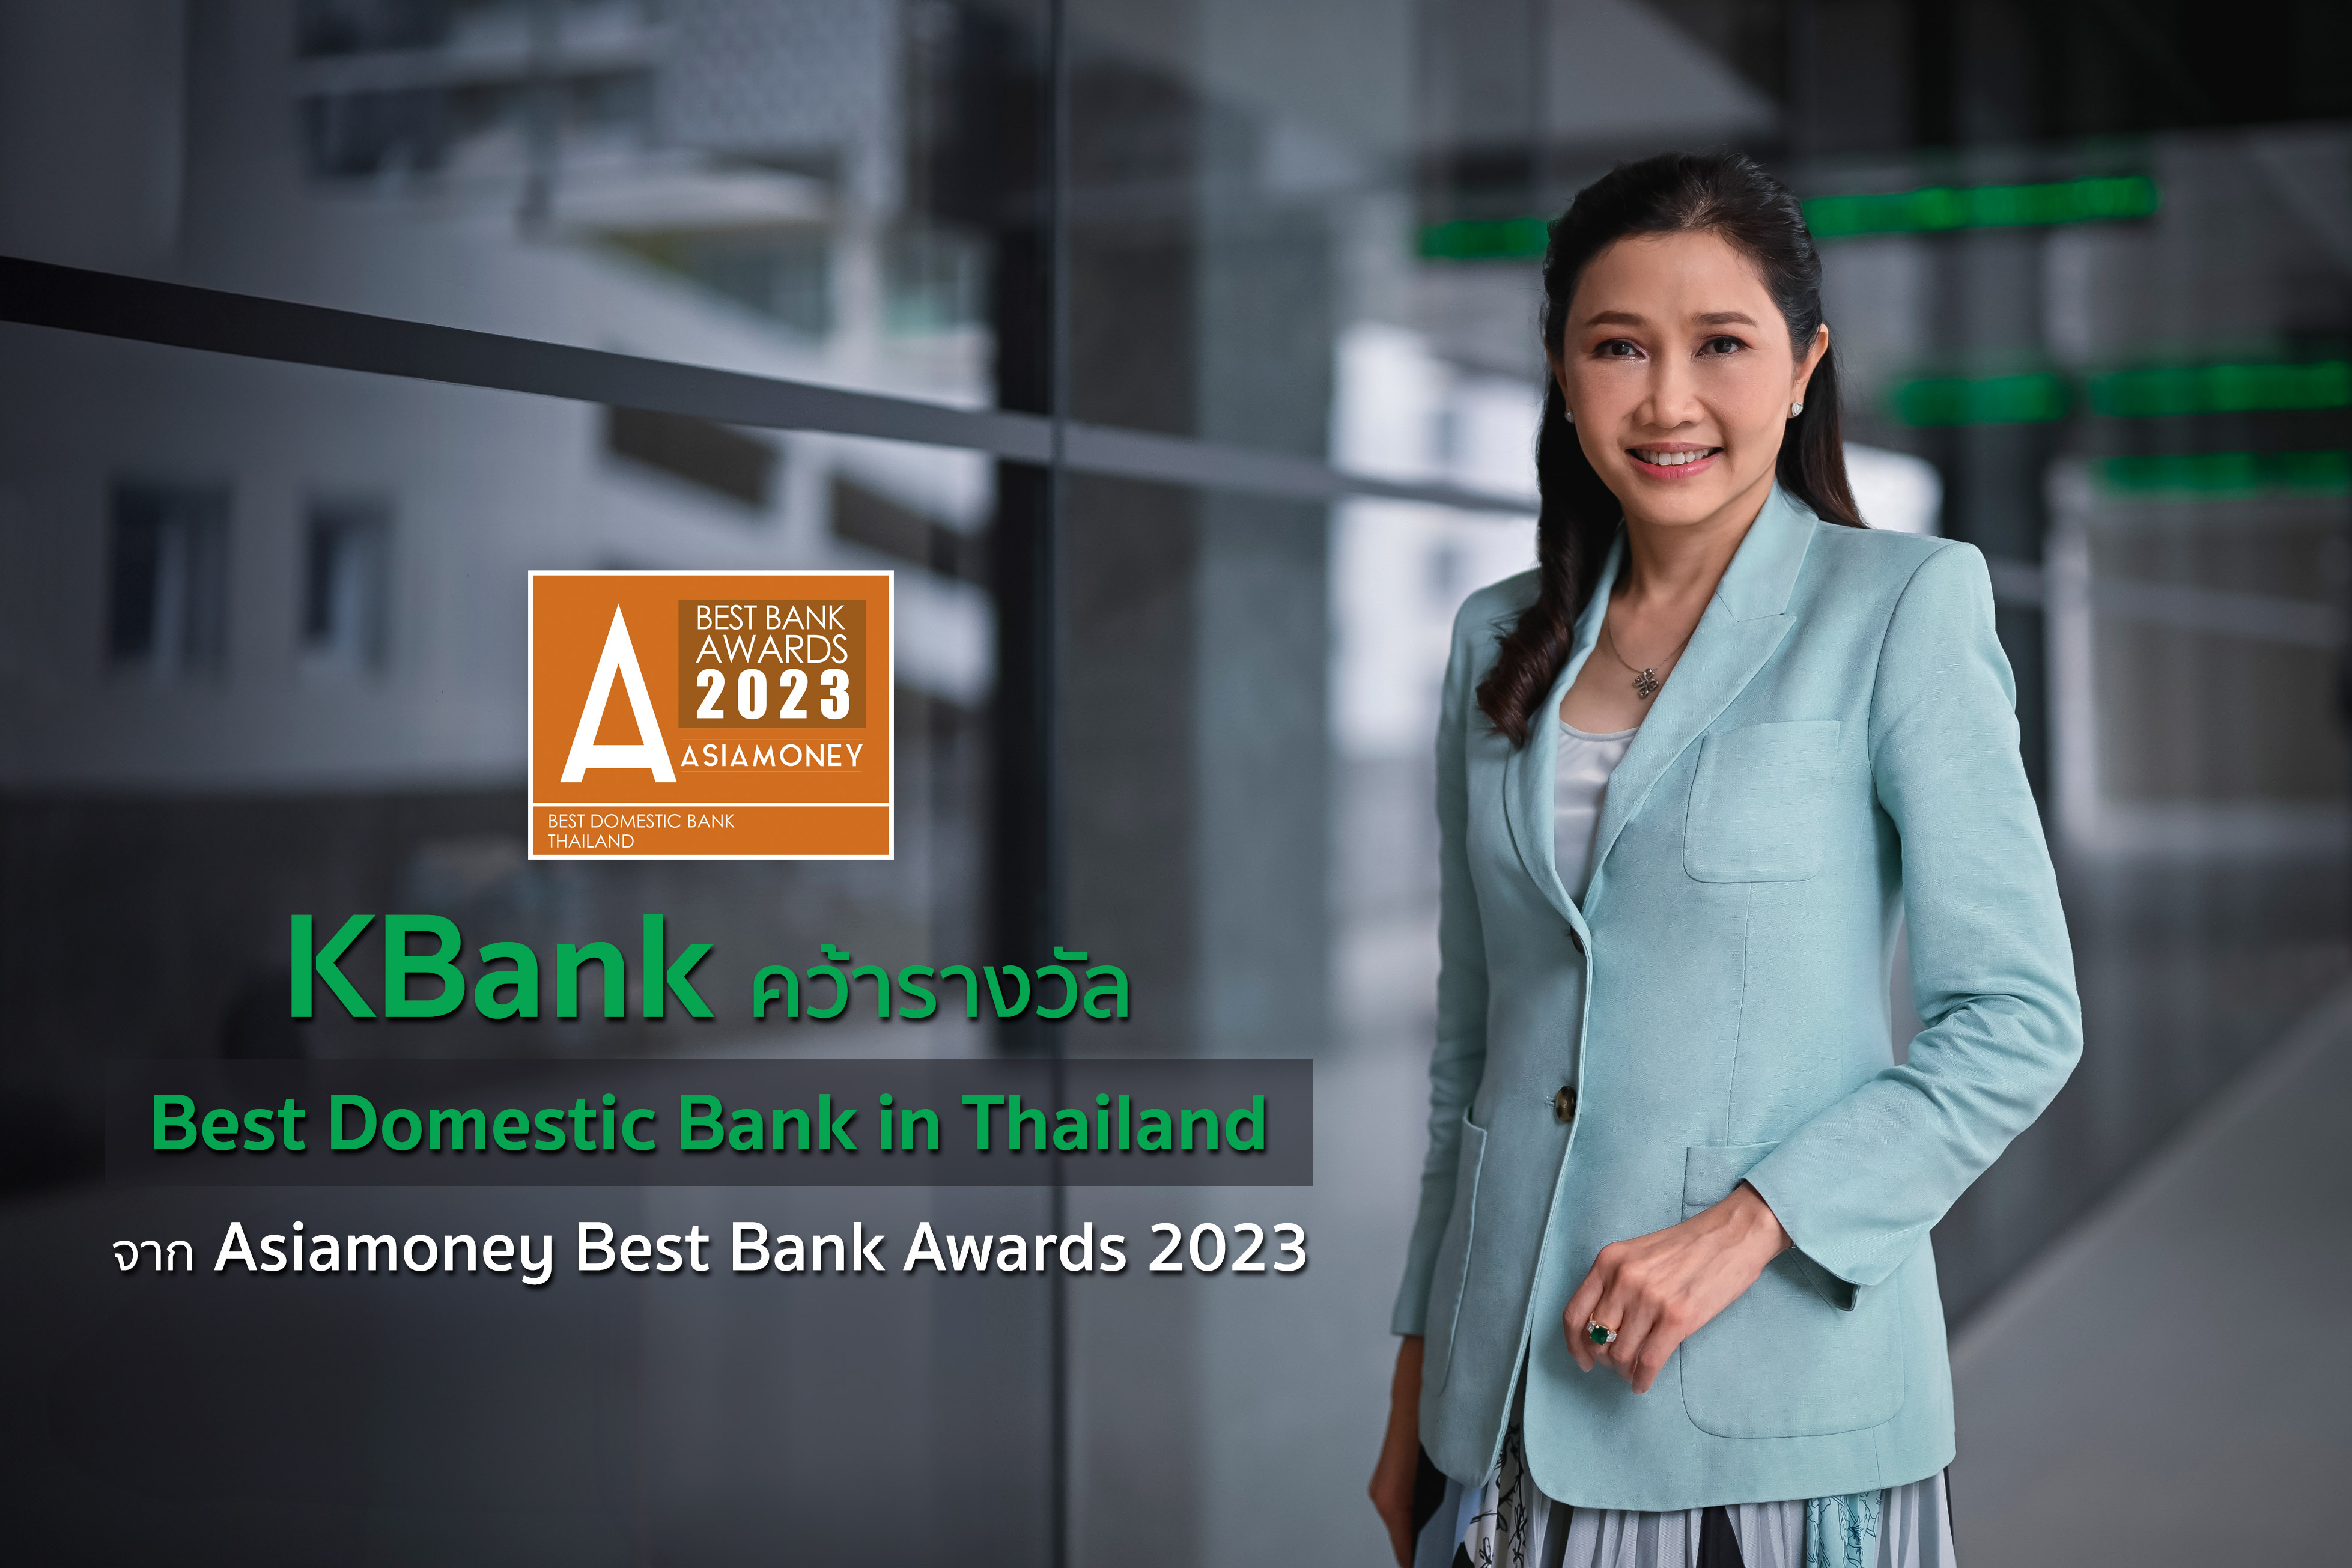 กสิกรไทยคว้ารางวัล ธนาคารที่ดีที่สุดในประเทศไทย ปี 2566 จาก Asiamoney